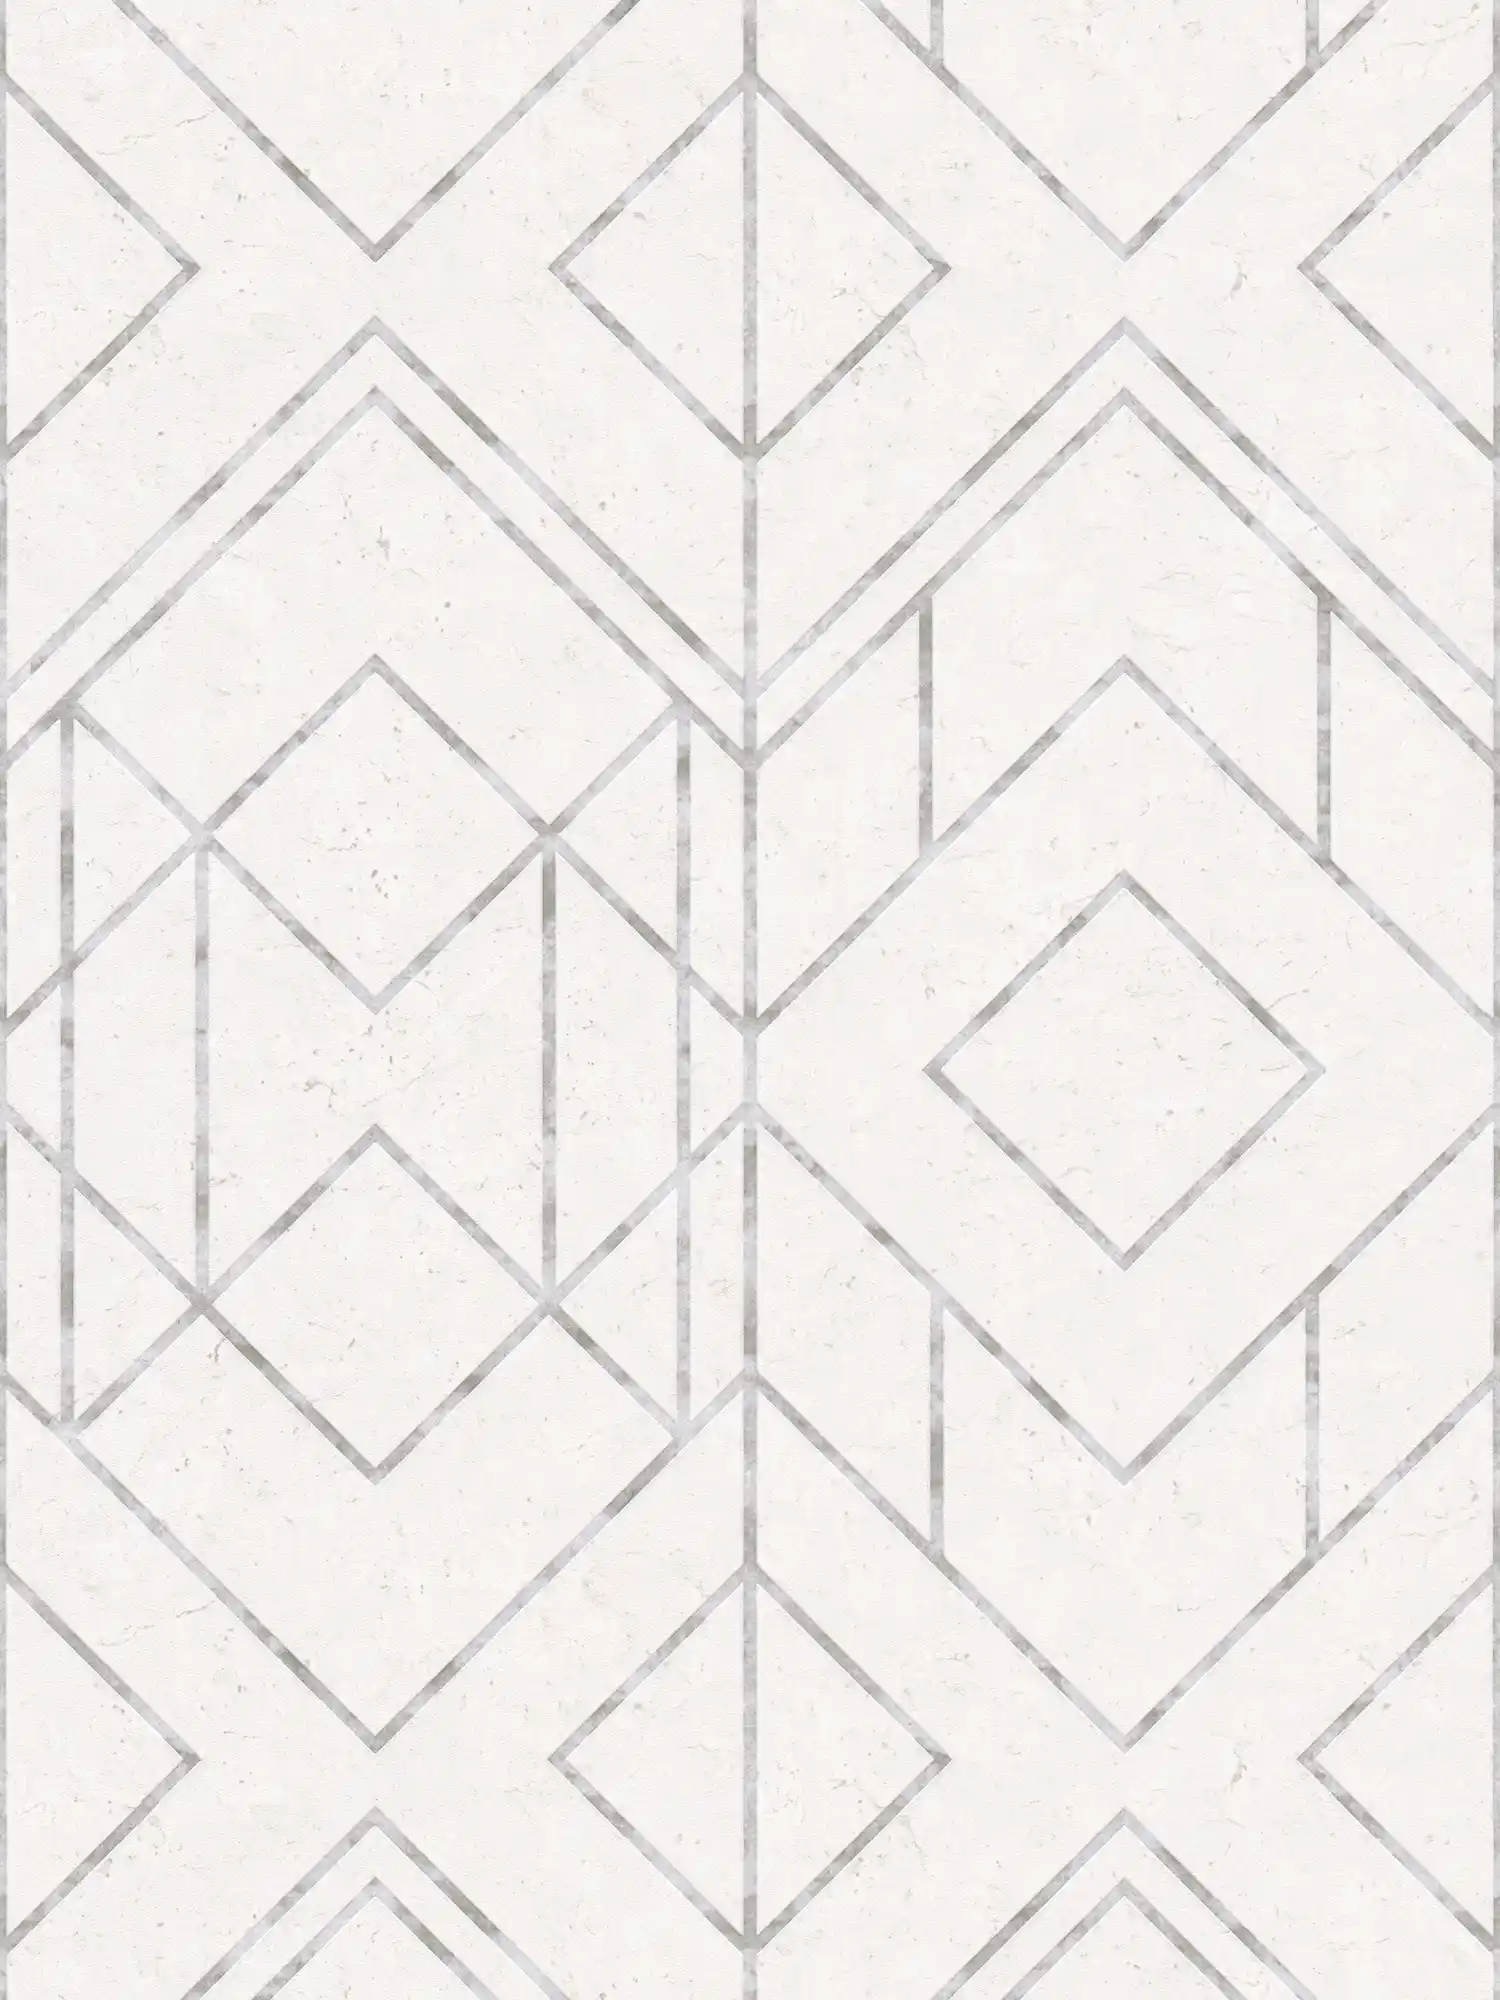         Grafische Mustertapete mit Metallic-Akzenten – Grau, Metallic, Weiß
    